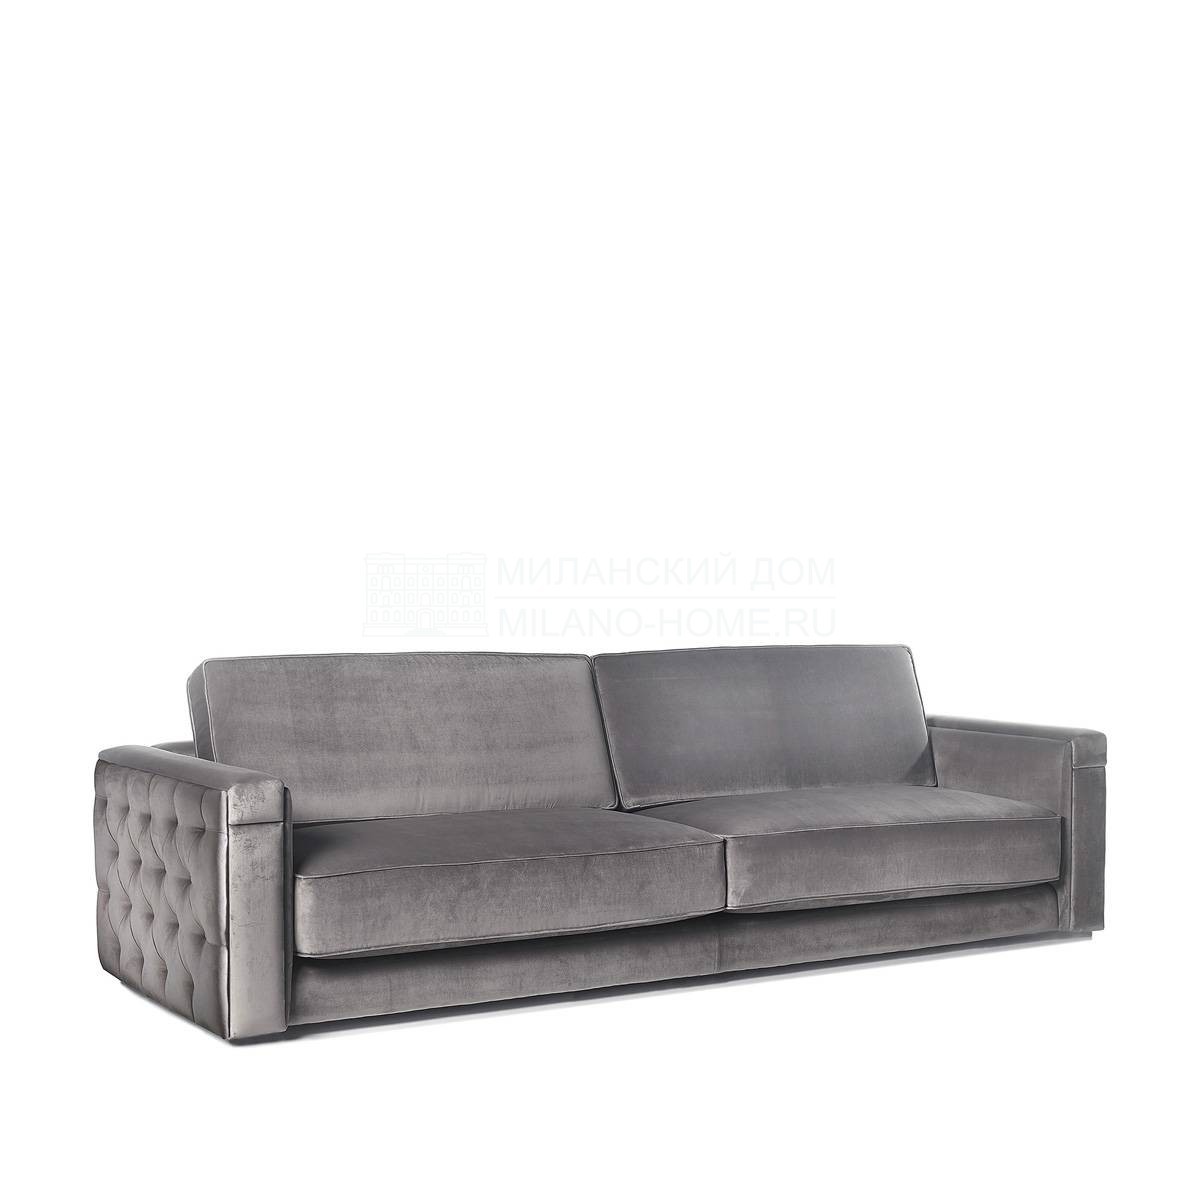 Прямой диван Miami sofa из Испании фабрики COLECCION ALEXANDRA